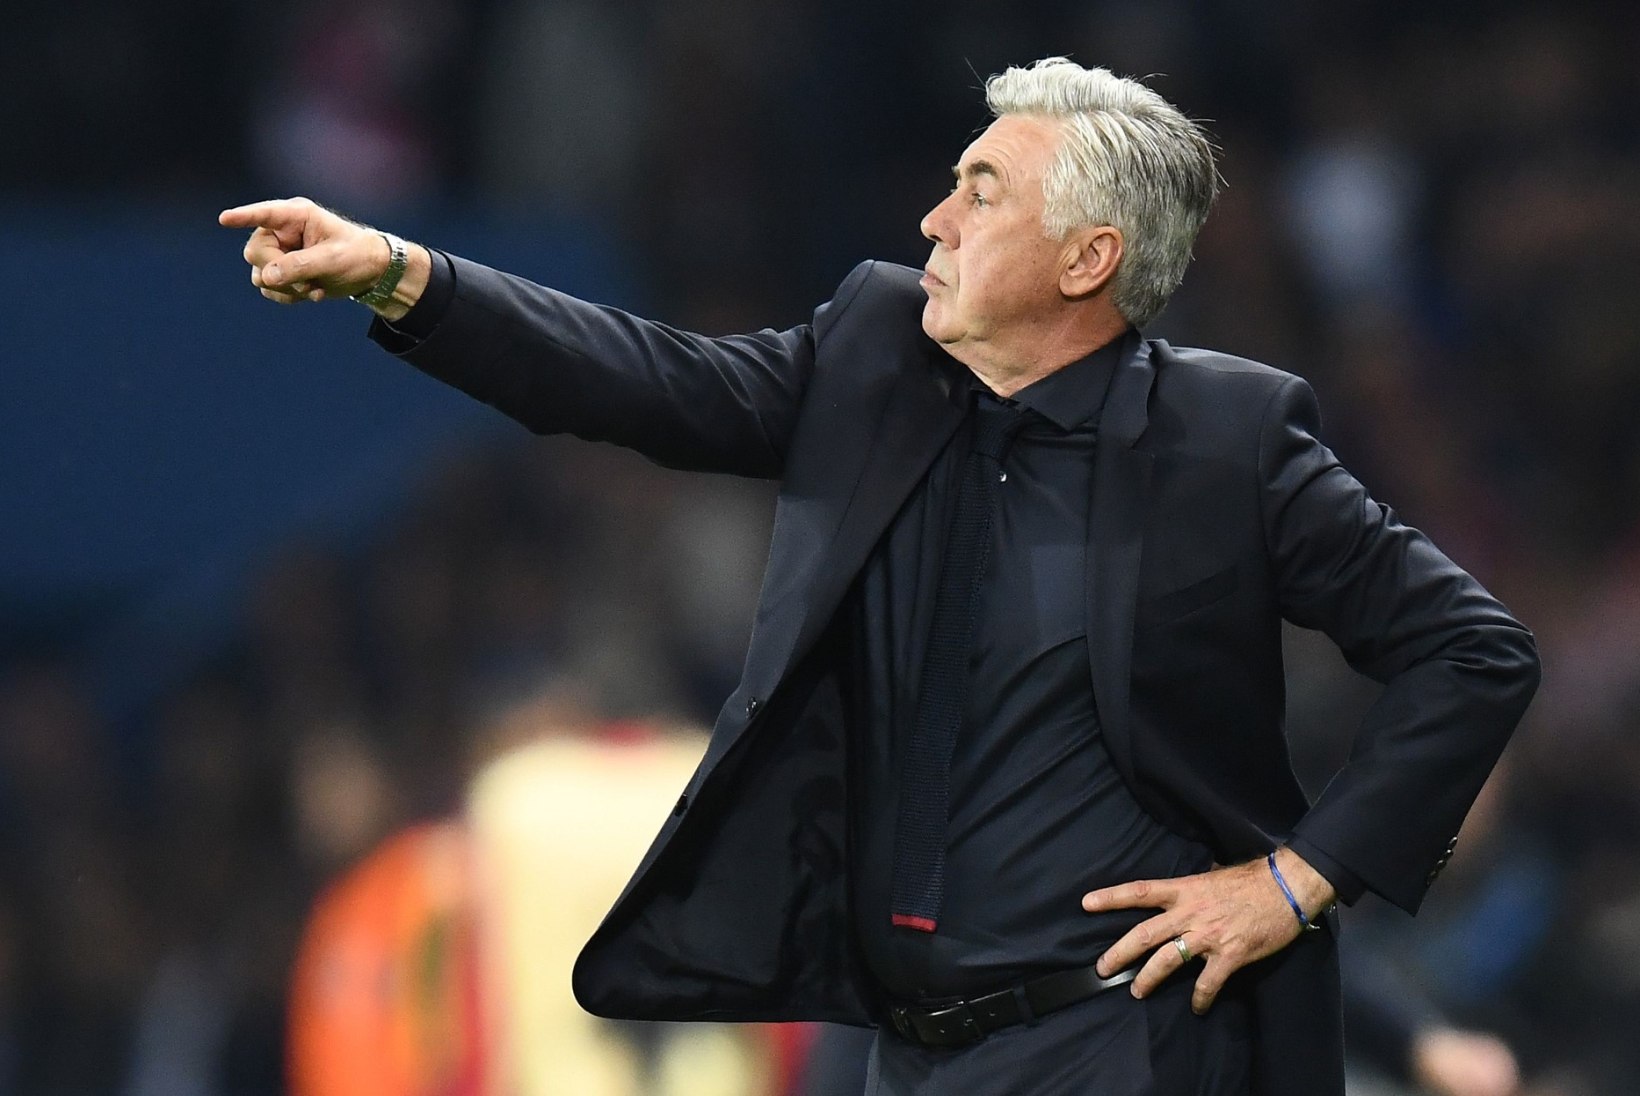 Müncheni Bayernist kinga saanud Ancelotti võtab jalgpallist puhkuse